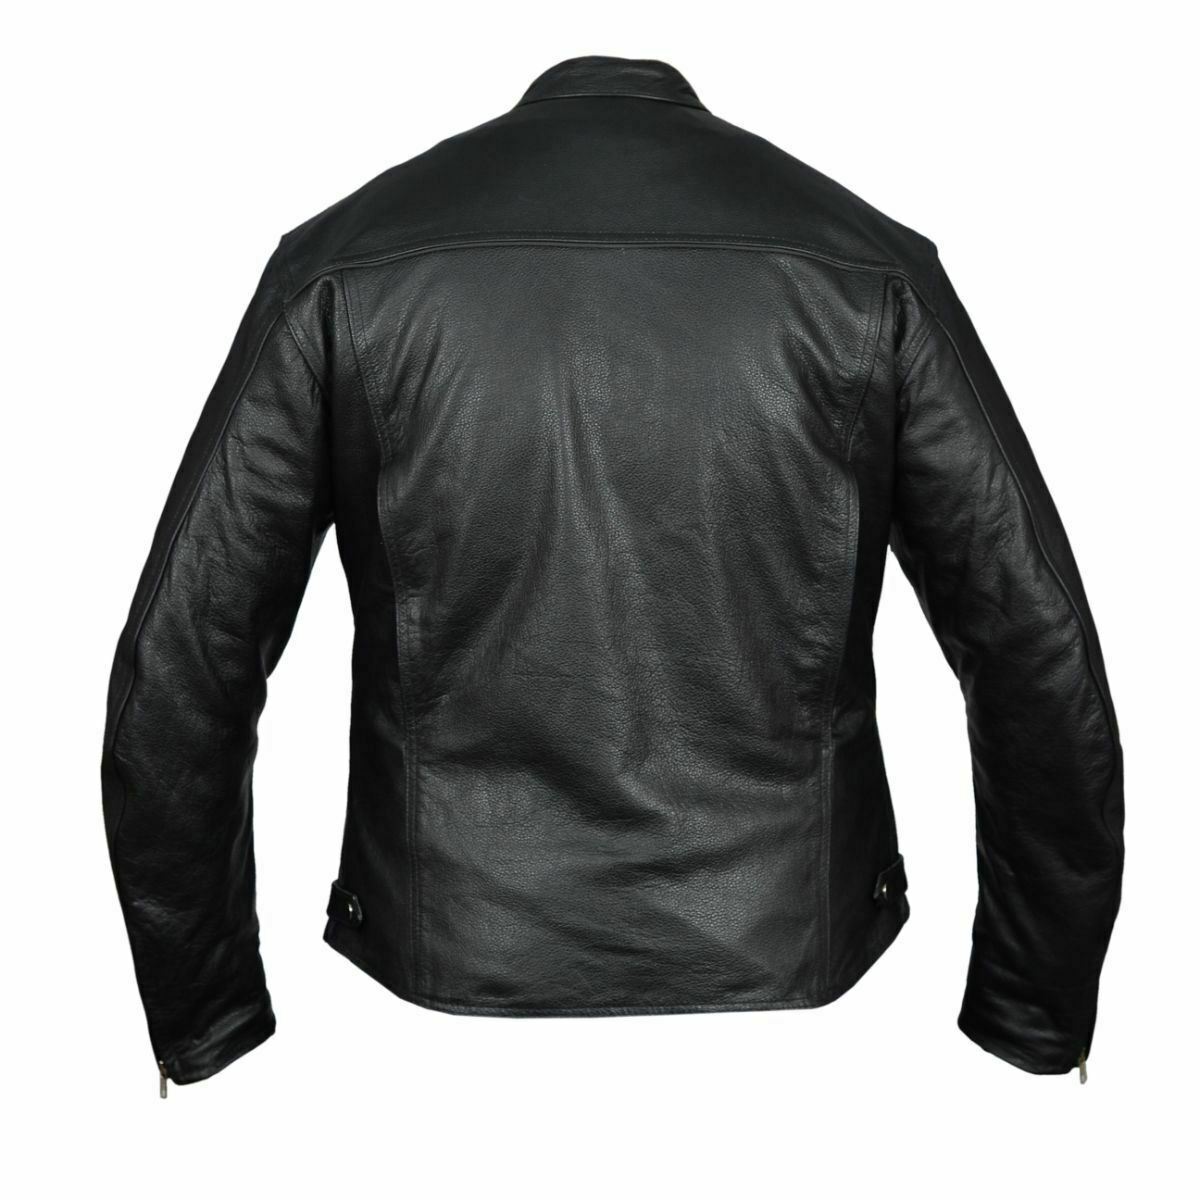 Vance Leather HMM544 Vented Premium Motorcycle Jacket